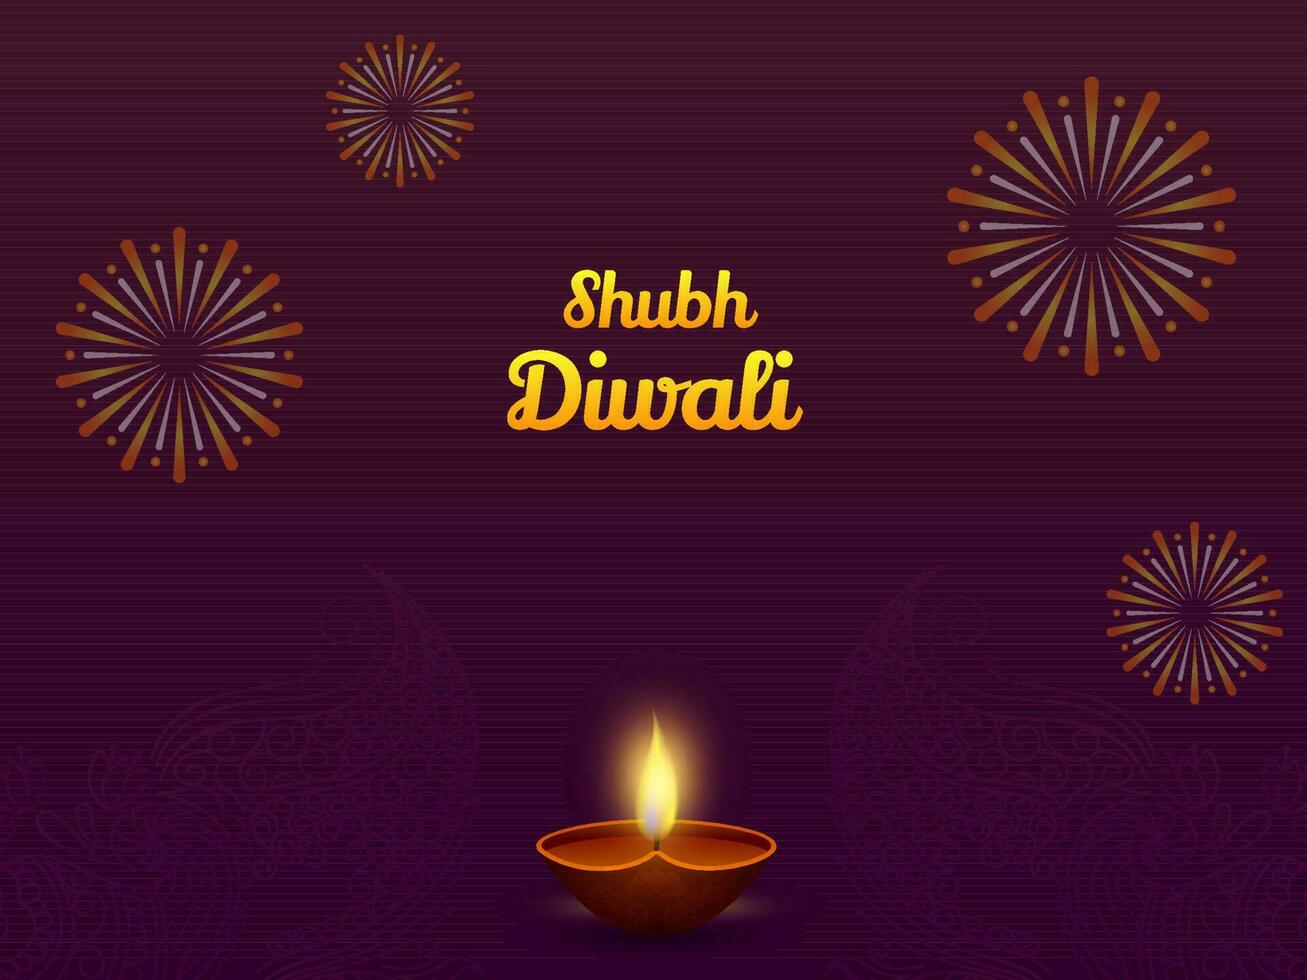 d'oro contento Diwali font con illuminato realistico olio lampada e fuochi d'artificio su viola paisley modello sfondo. vettore